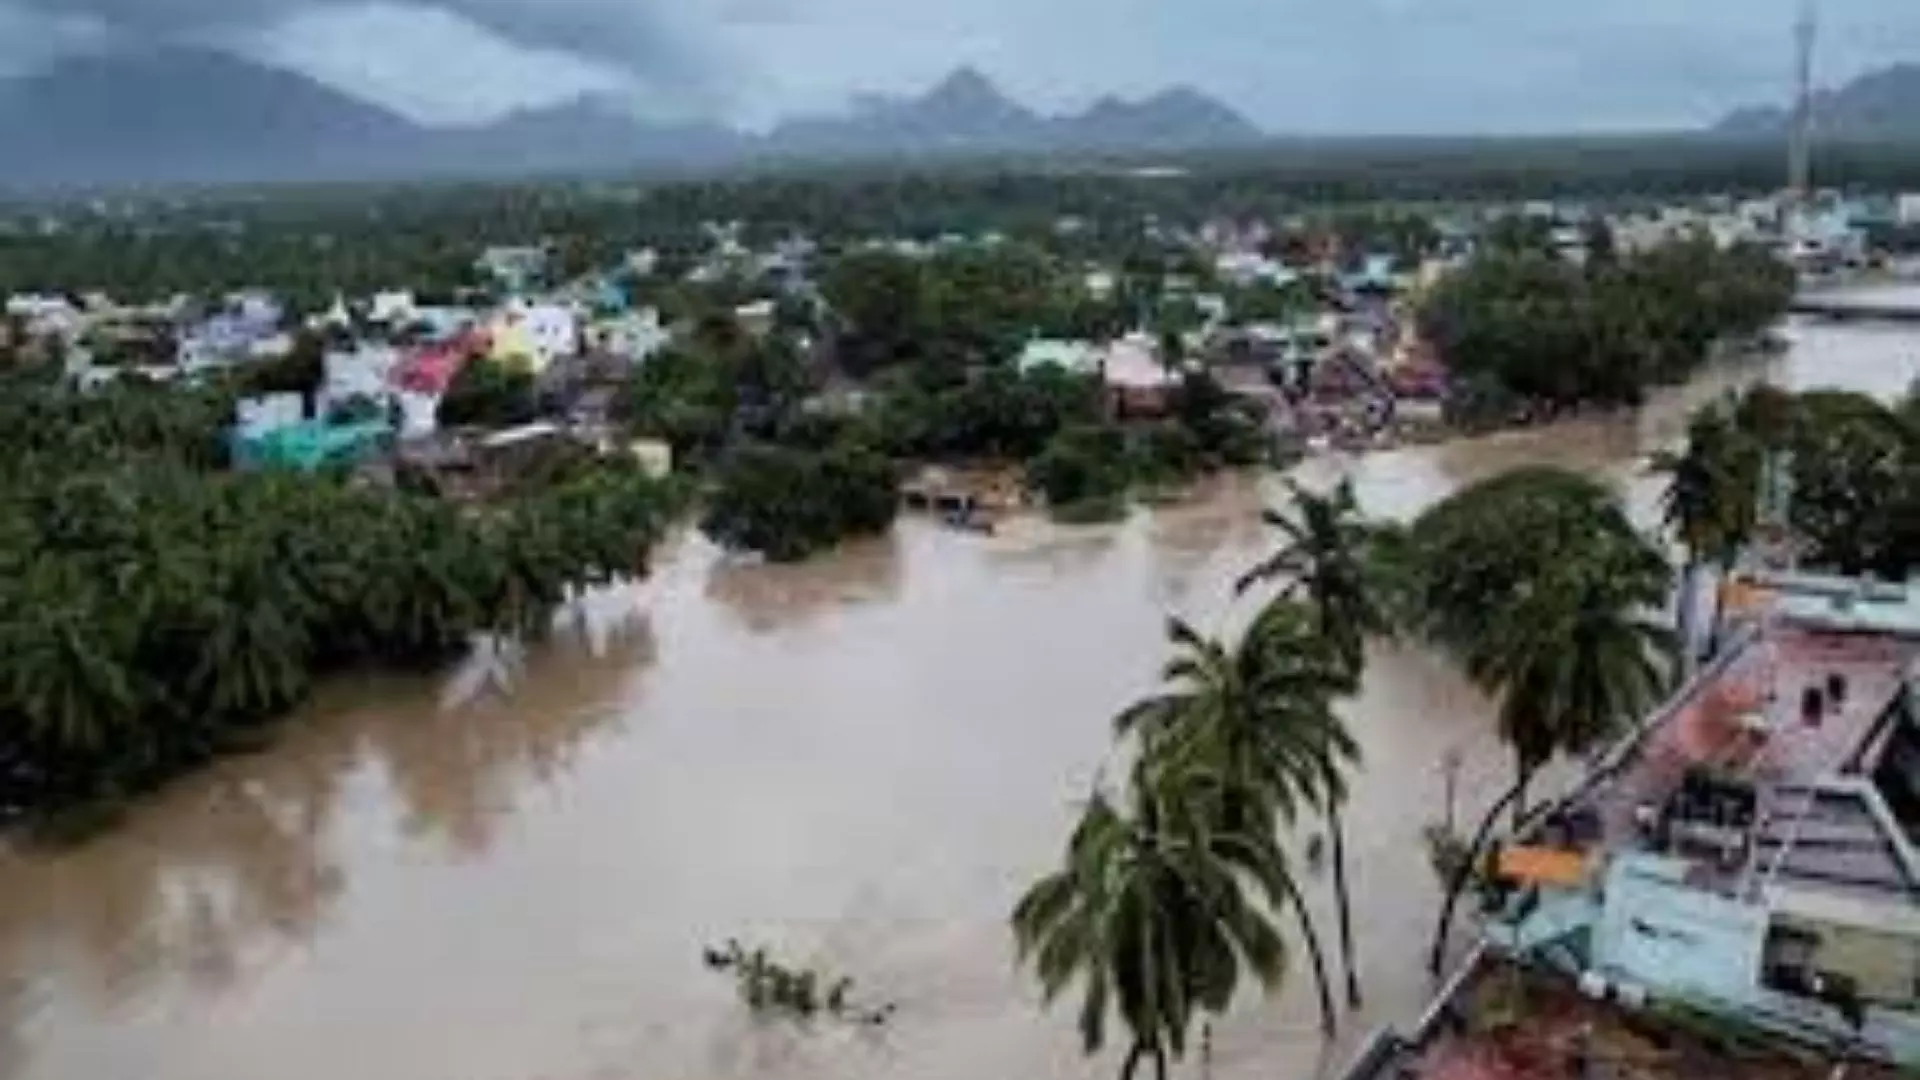 26 Members Died due to Floods in Kerala